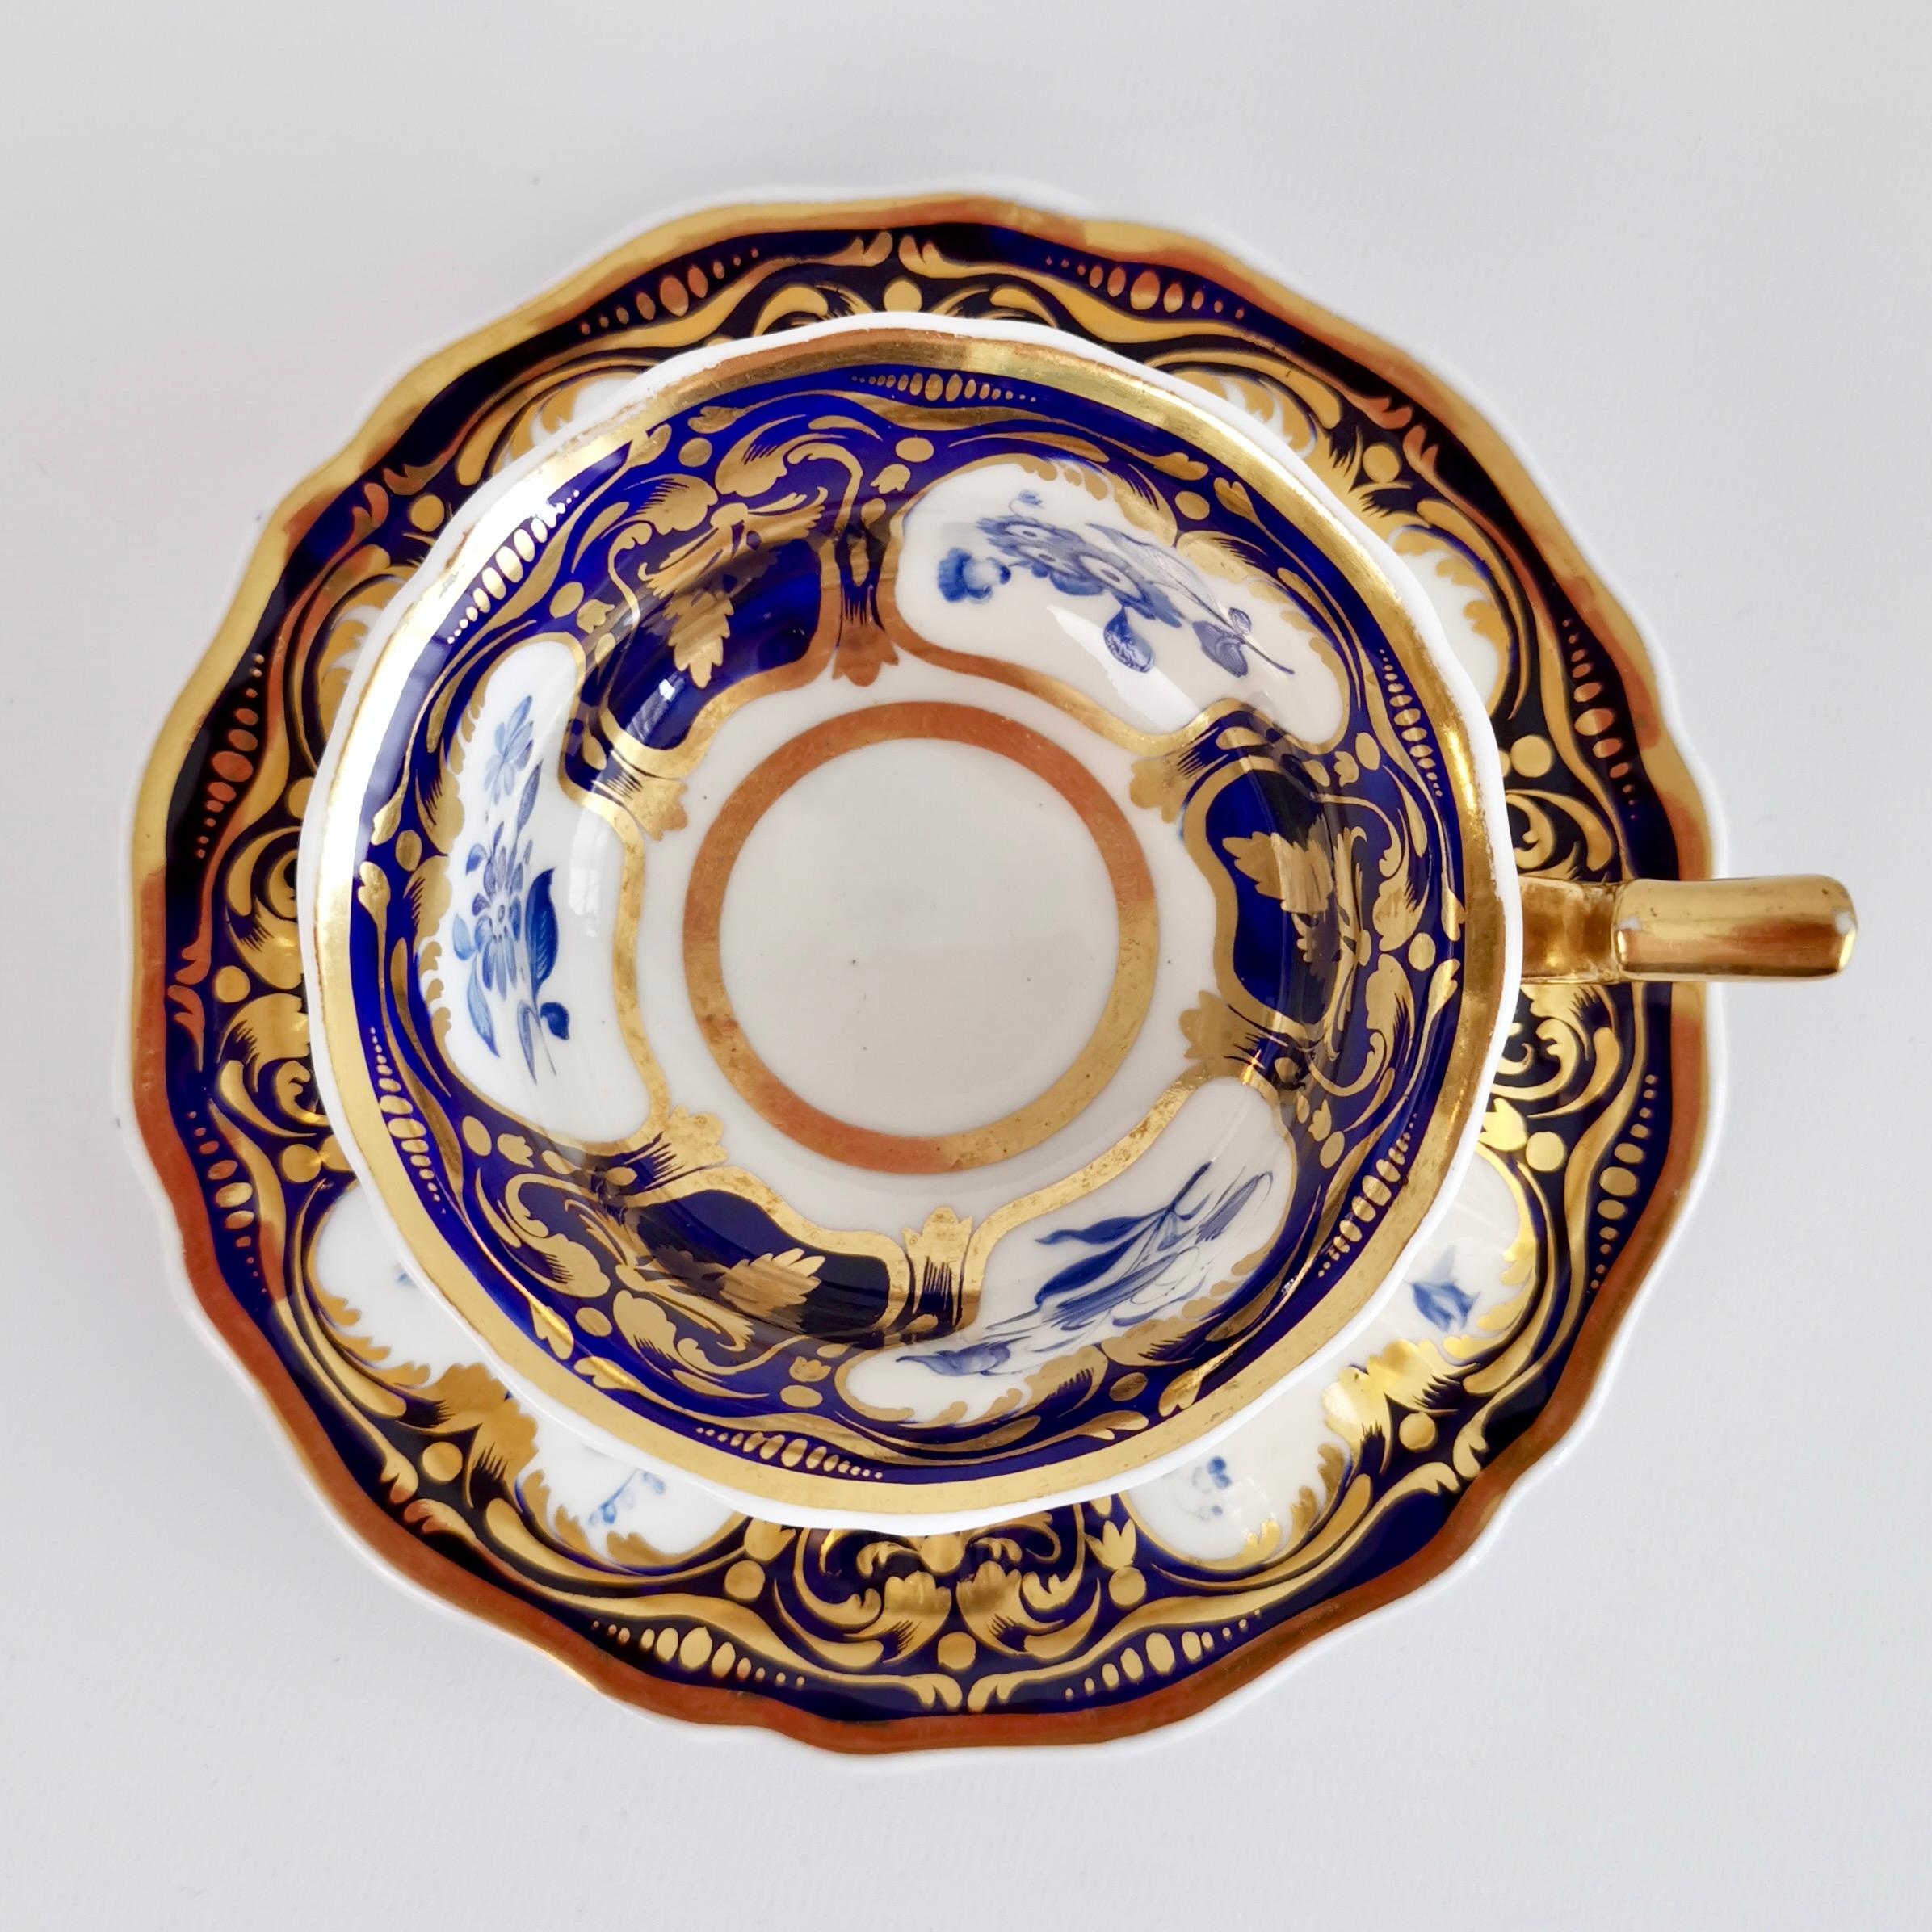 Il s'agit d'une belle tasse à thé et d'une soucoupe fabriquées vers 1825 par Ridgway. Il est décoré du très populaire motif n° 2/1000 : un fond bleu cobalt avec une riche dorure et des fleurs bleues monochromes dans des réserves. La forme est